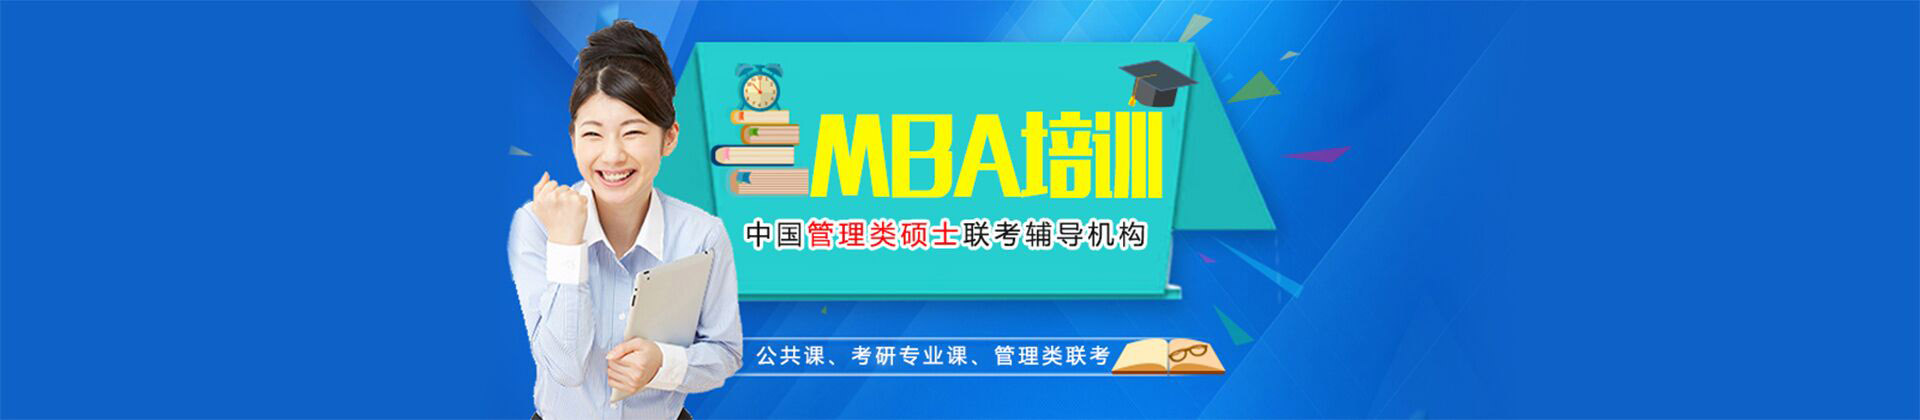 重庆考研MBA